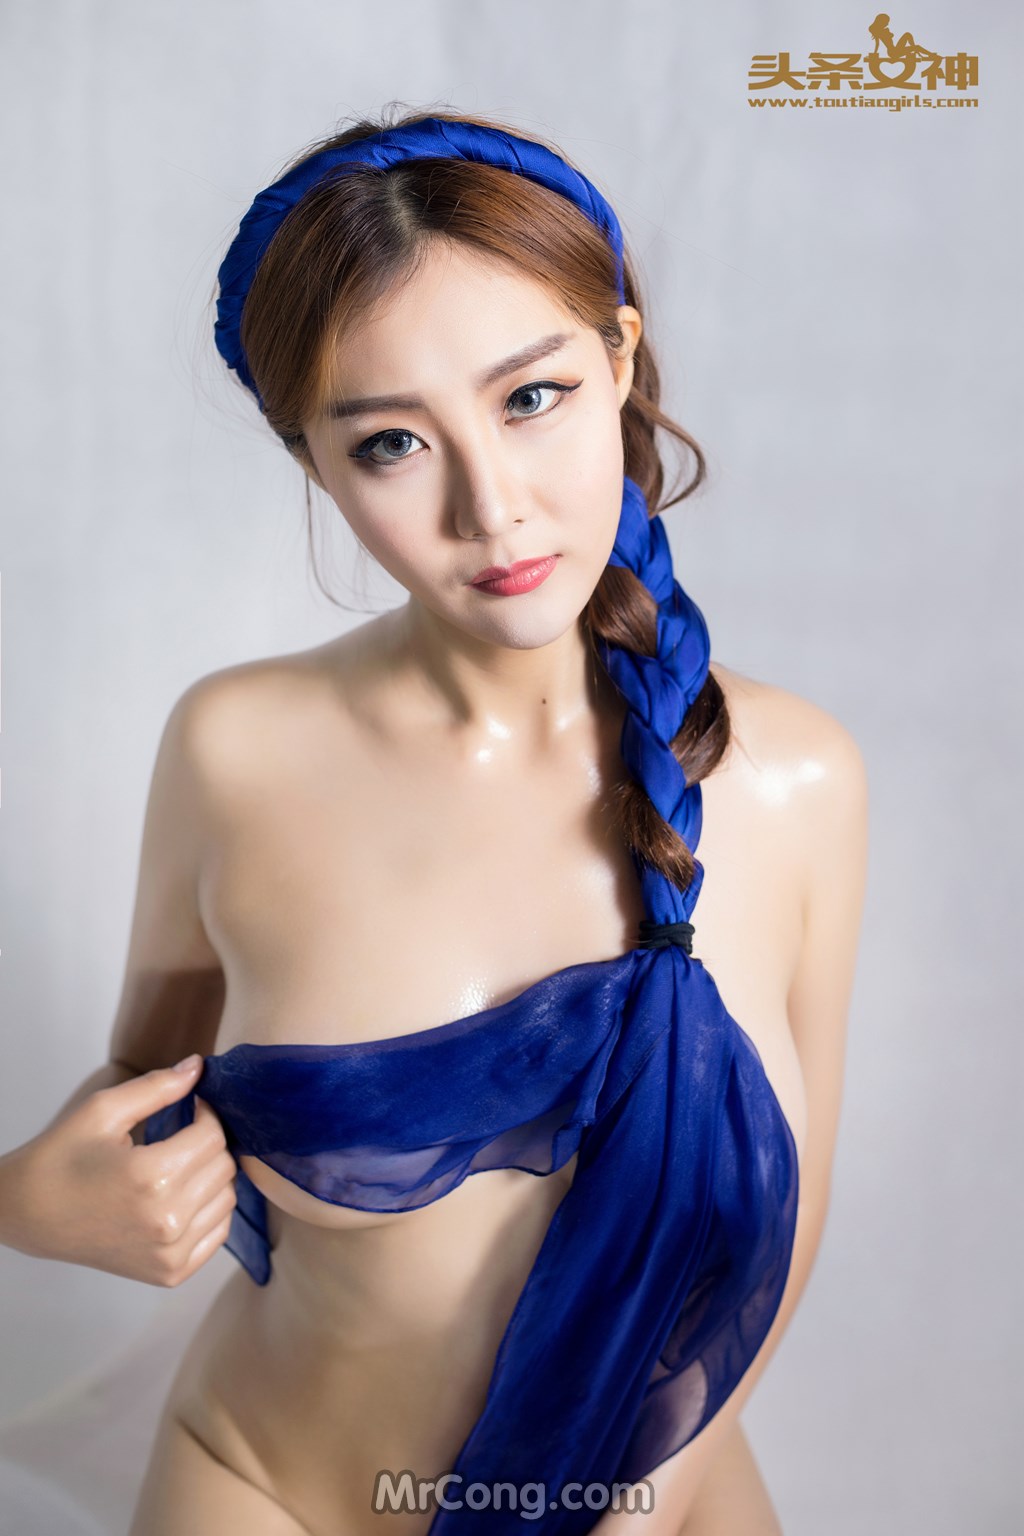 TouTiao 2016-08-11: Model Wang Yi Han (王一涵) (41 photos) photo 1-14